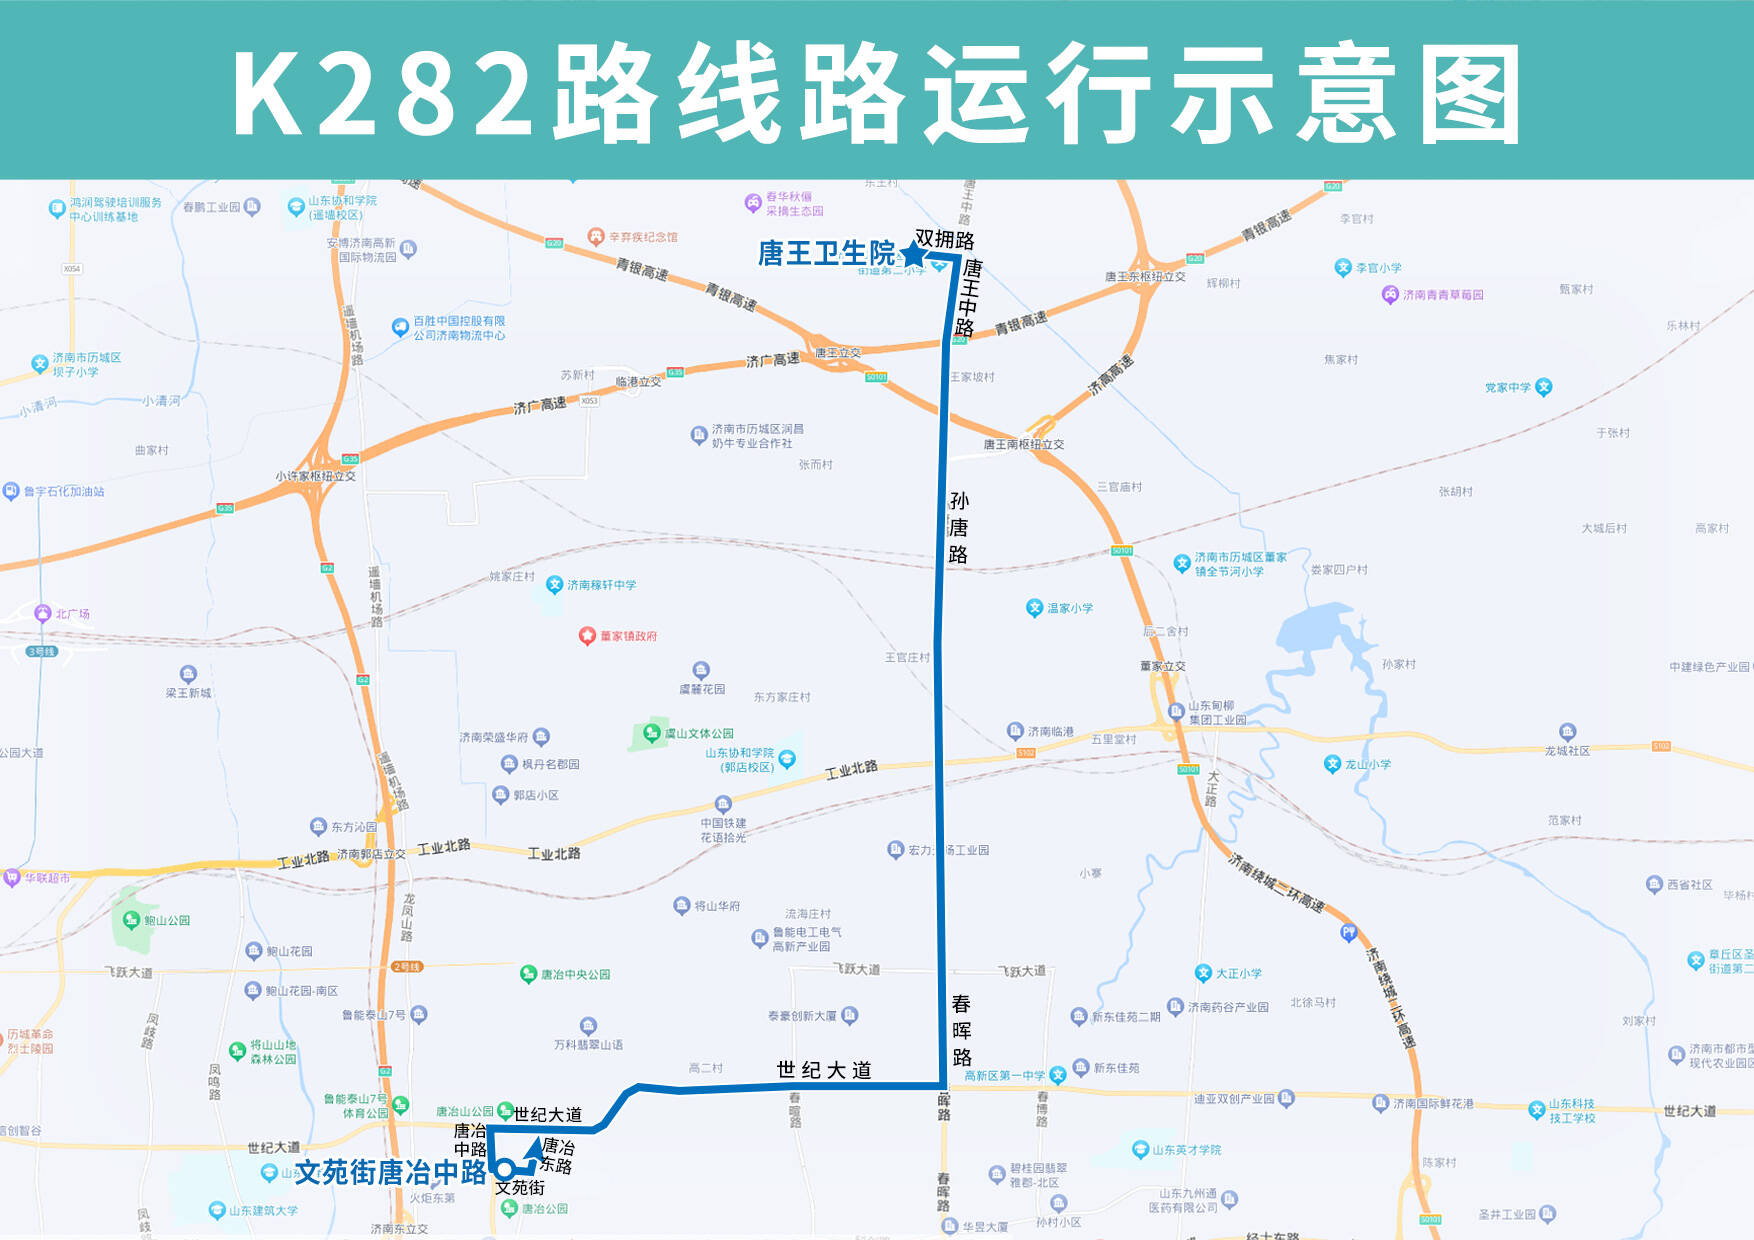 填补唐王片区部分路段公交空白，1月6日起济南公交开通试运行K282路